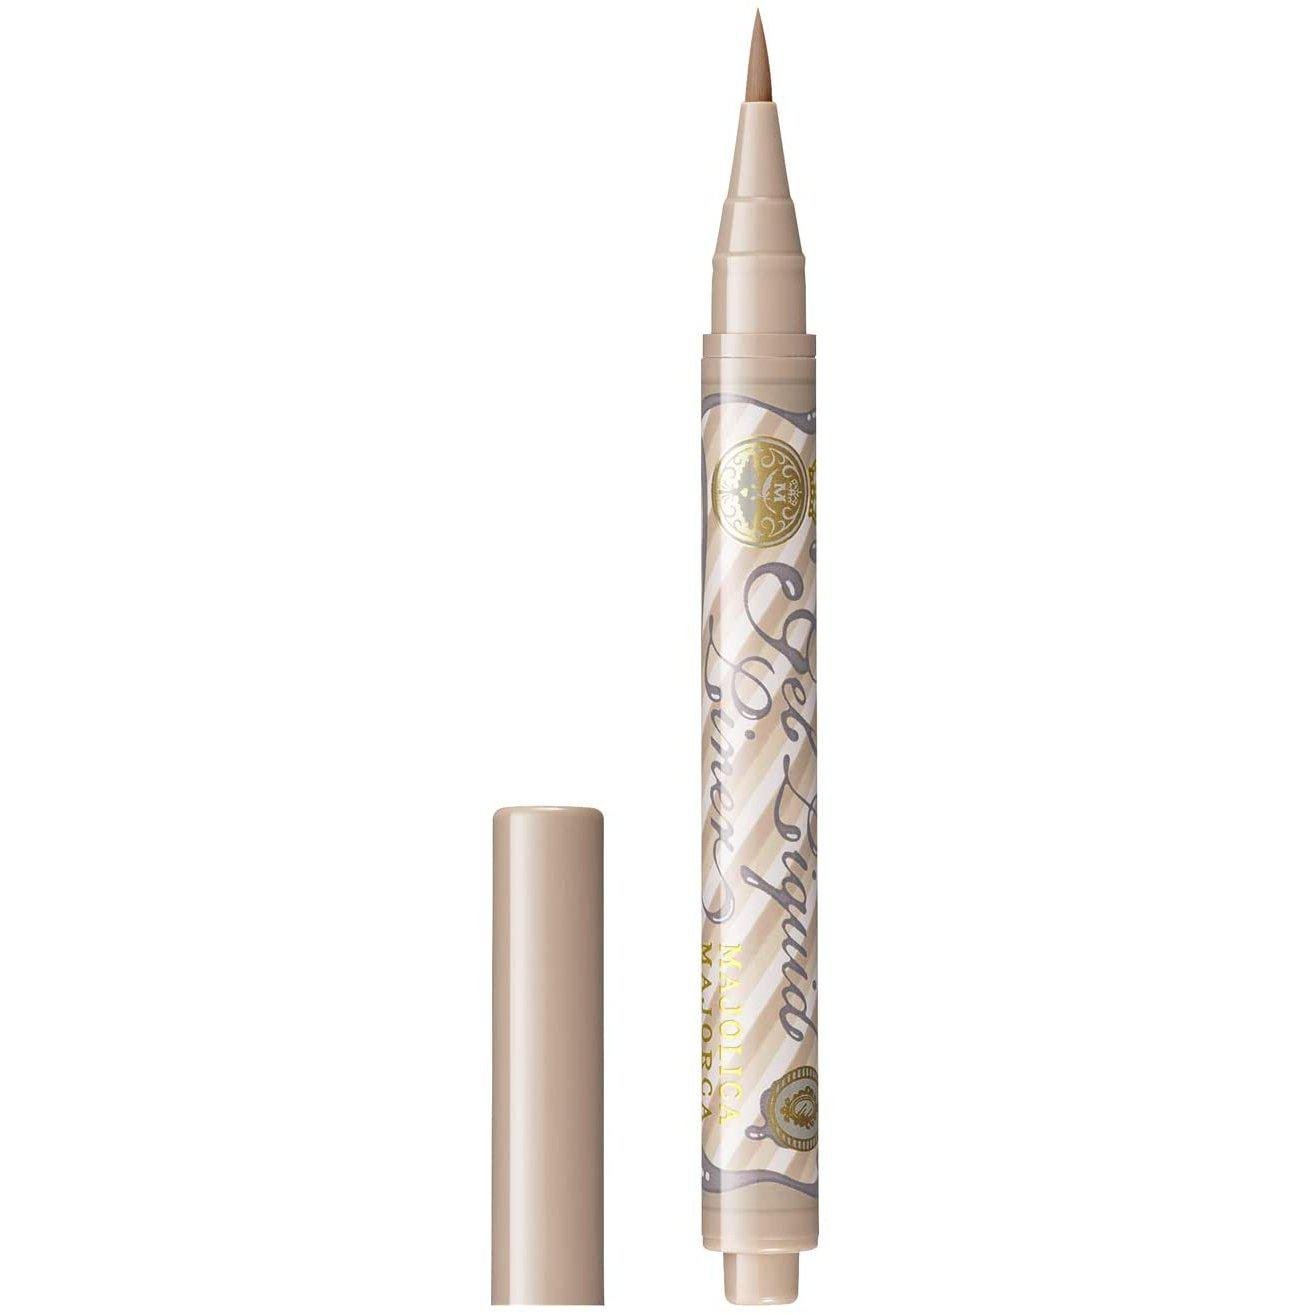 Majolica Majorca Gel Liquid Liner Waterproof Liquid Eyeliner Pen 1.4ml